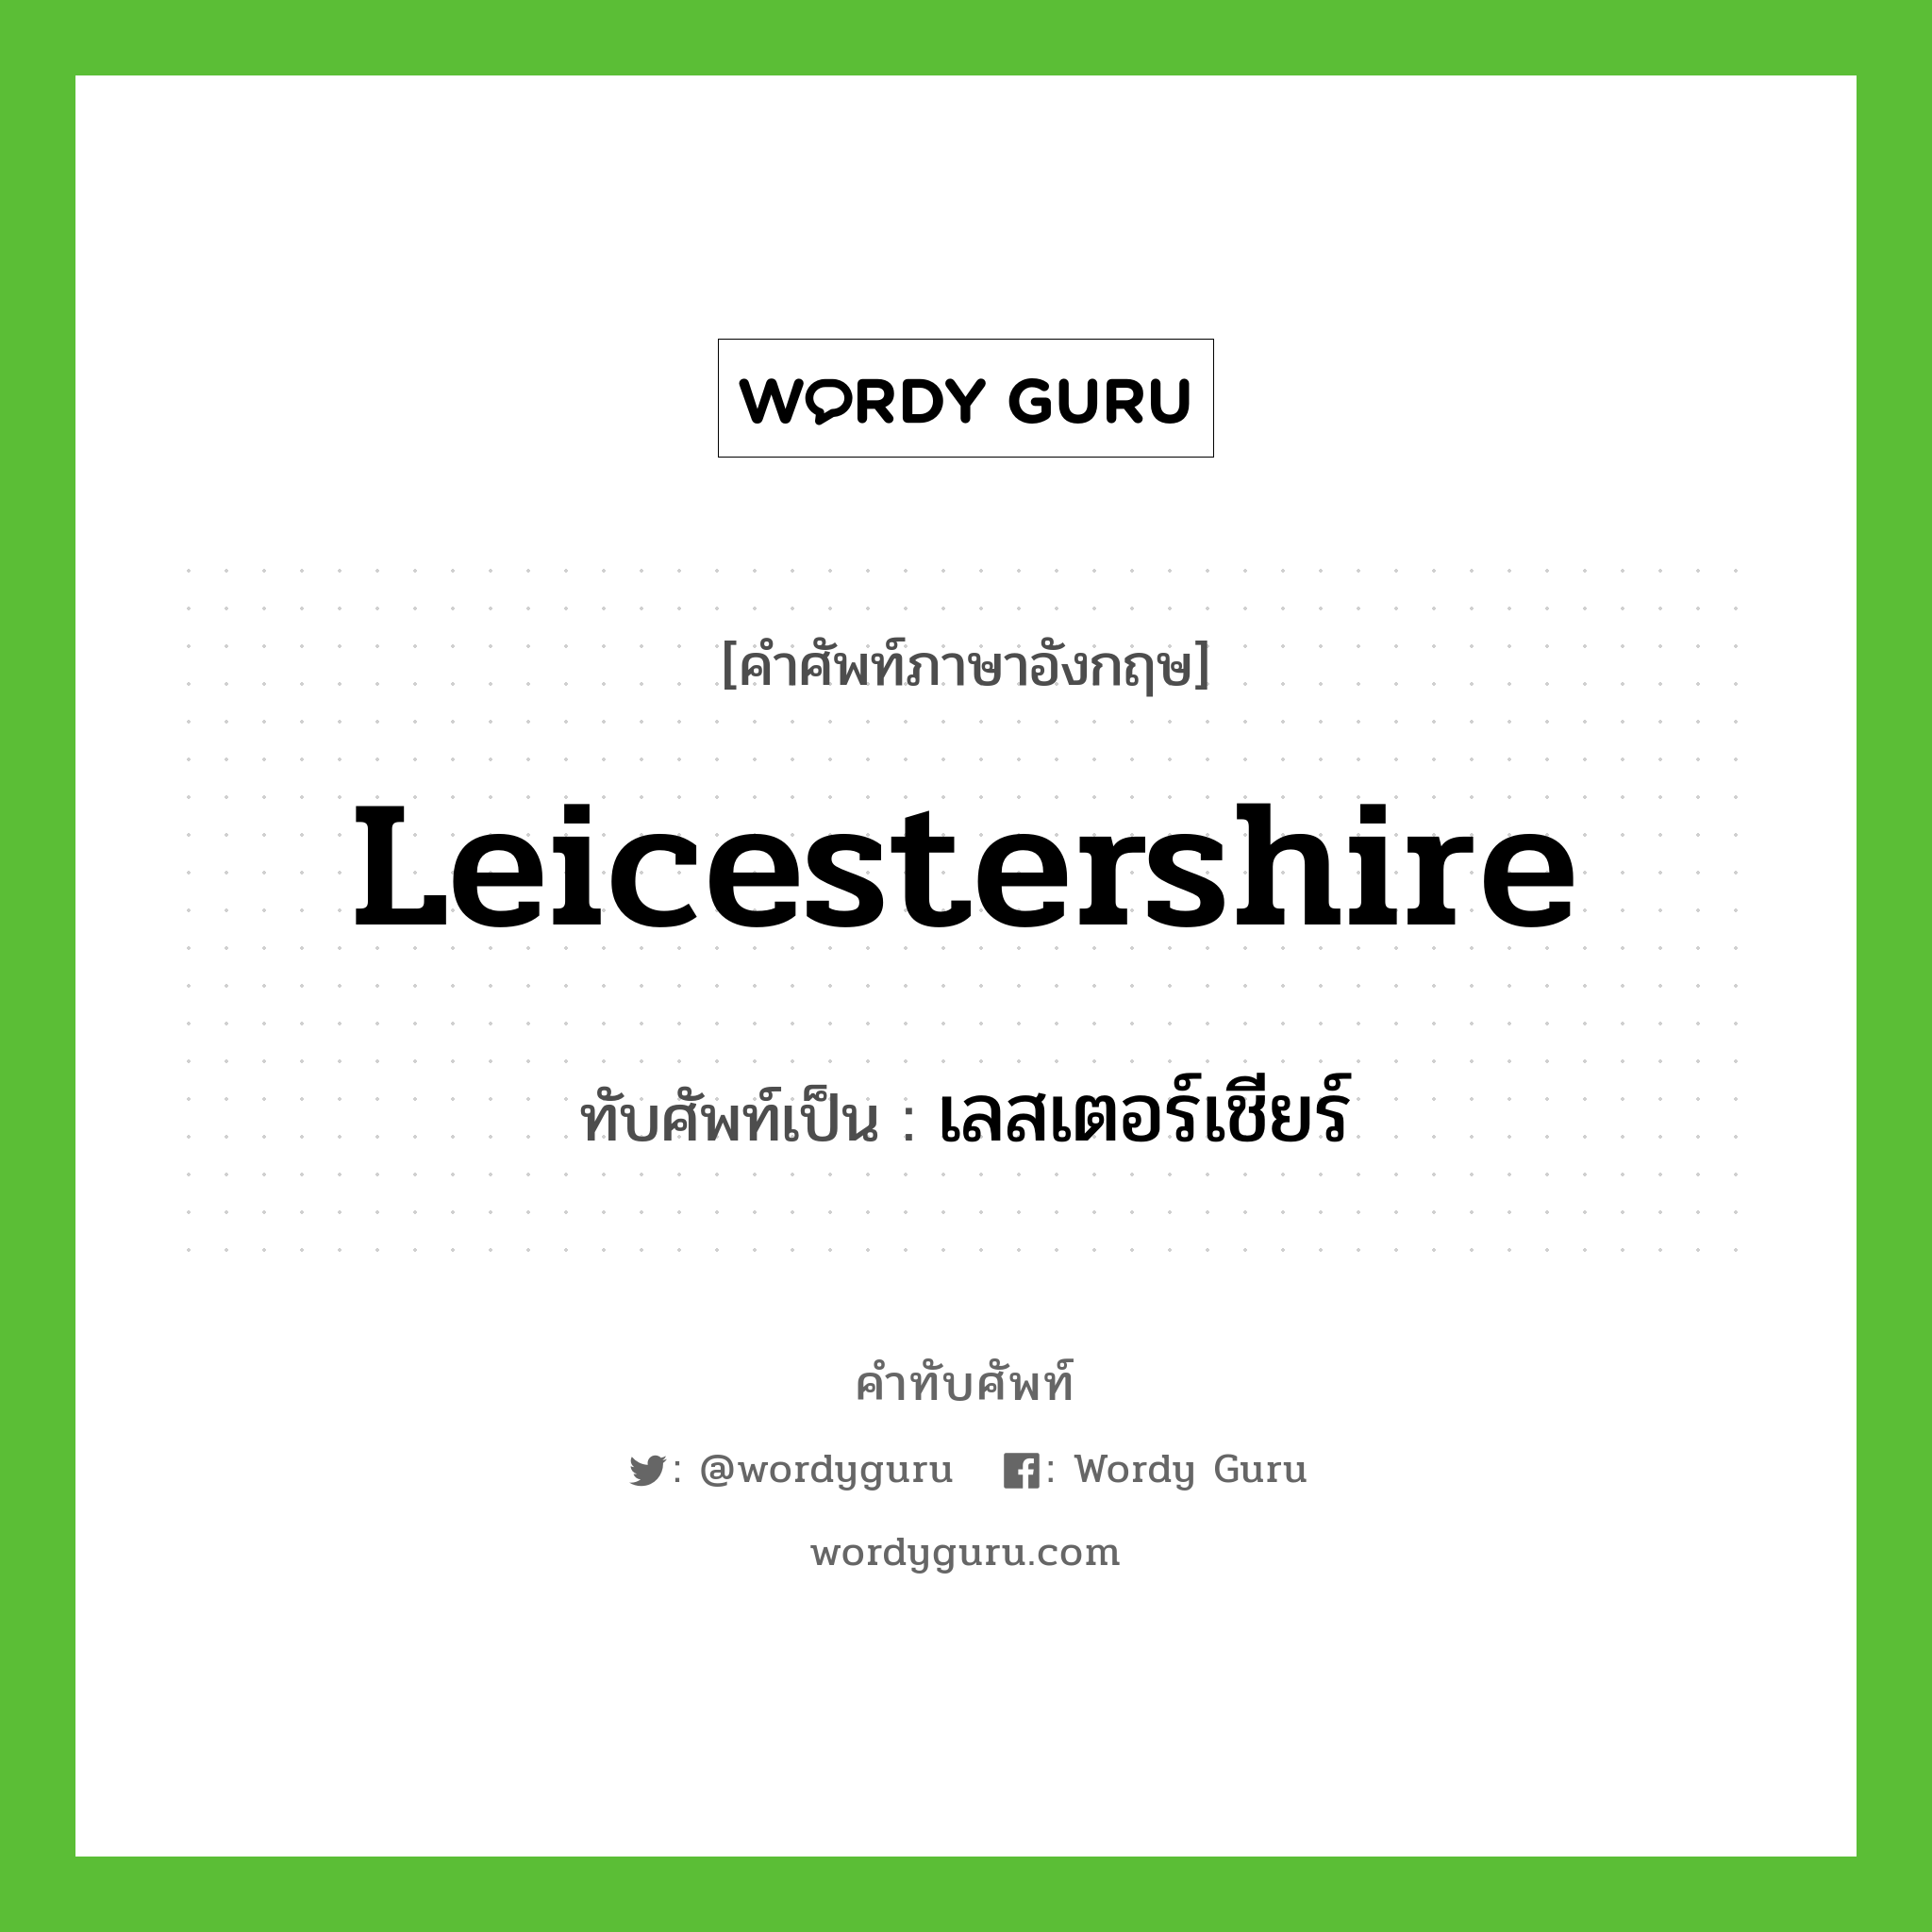 เลสเตอร์เชียร์ เขียนอย่างไร?, คำศัพท์ภาษาอังกฤษ เลสเตอร์เชียร์ ทับศัพท์เป็น Leicestershire